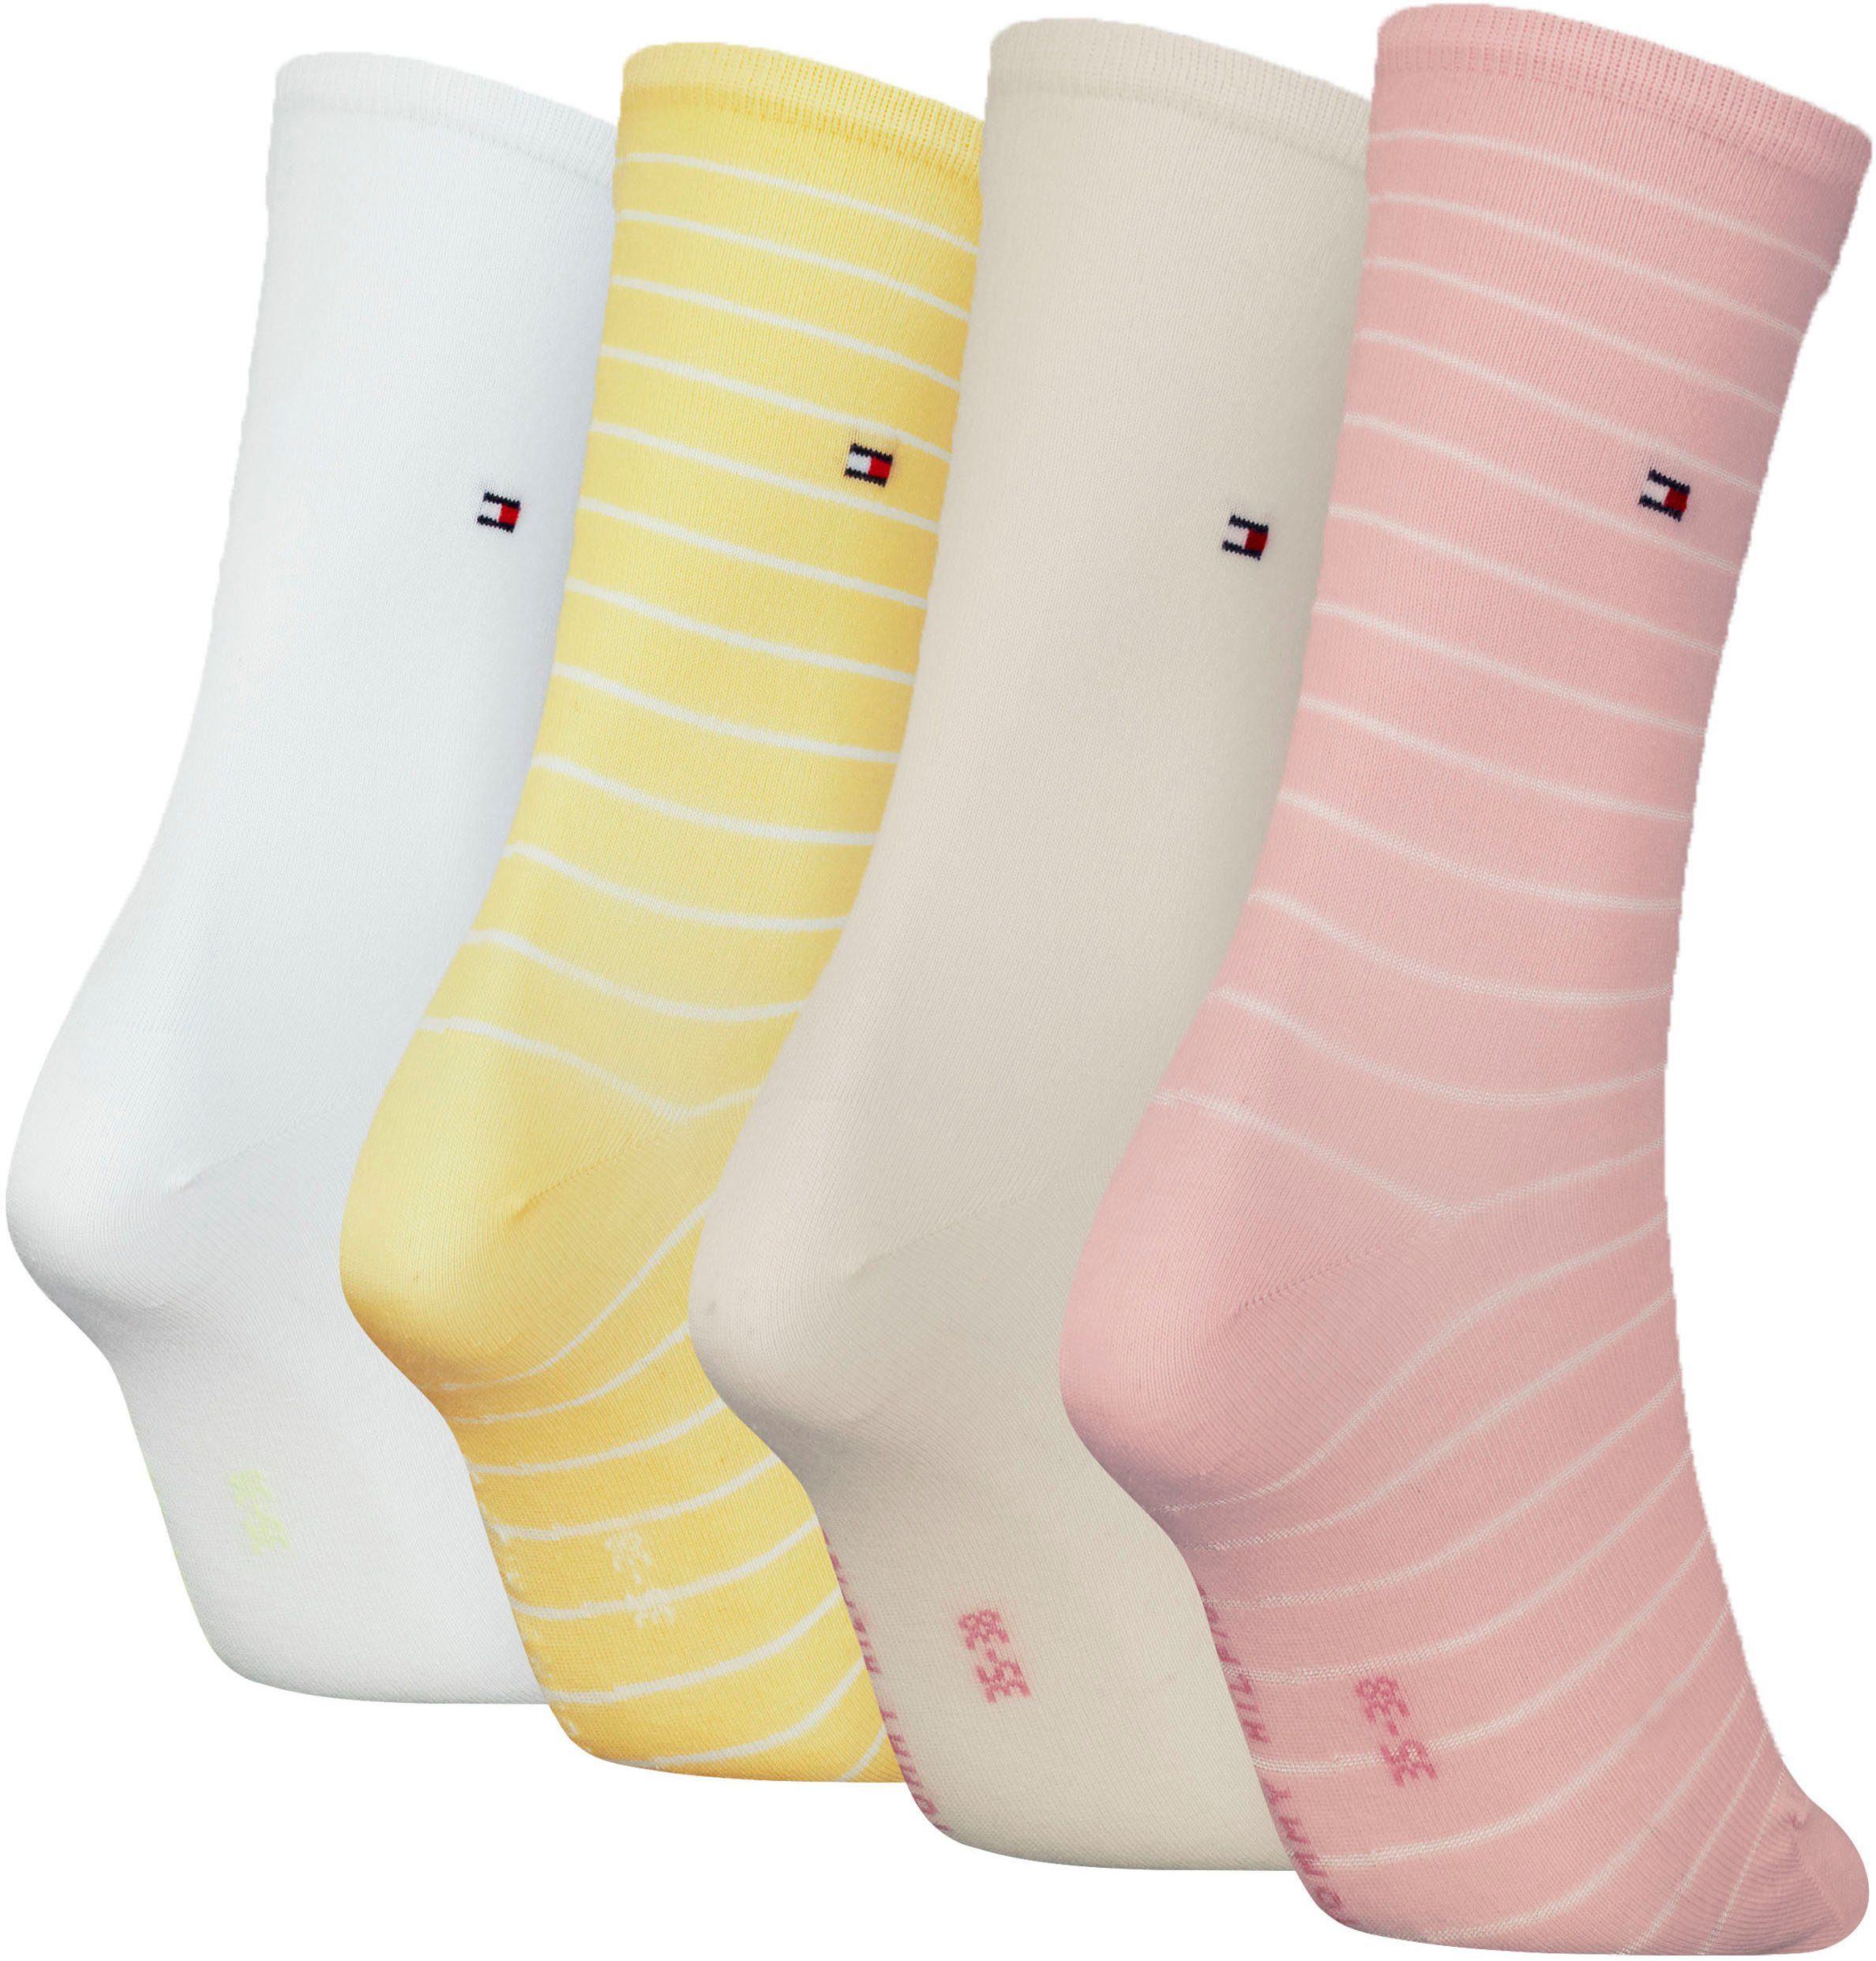 Tommy Hilfiger Socken klassisches raffiniertes Streifendesign pink-yellow-white | Lange Socken